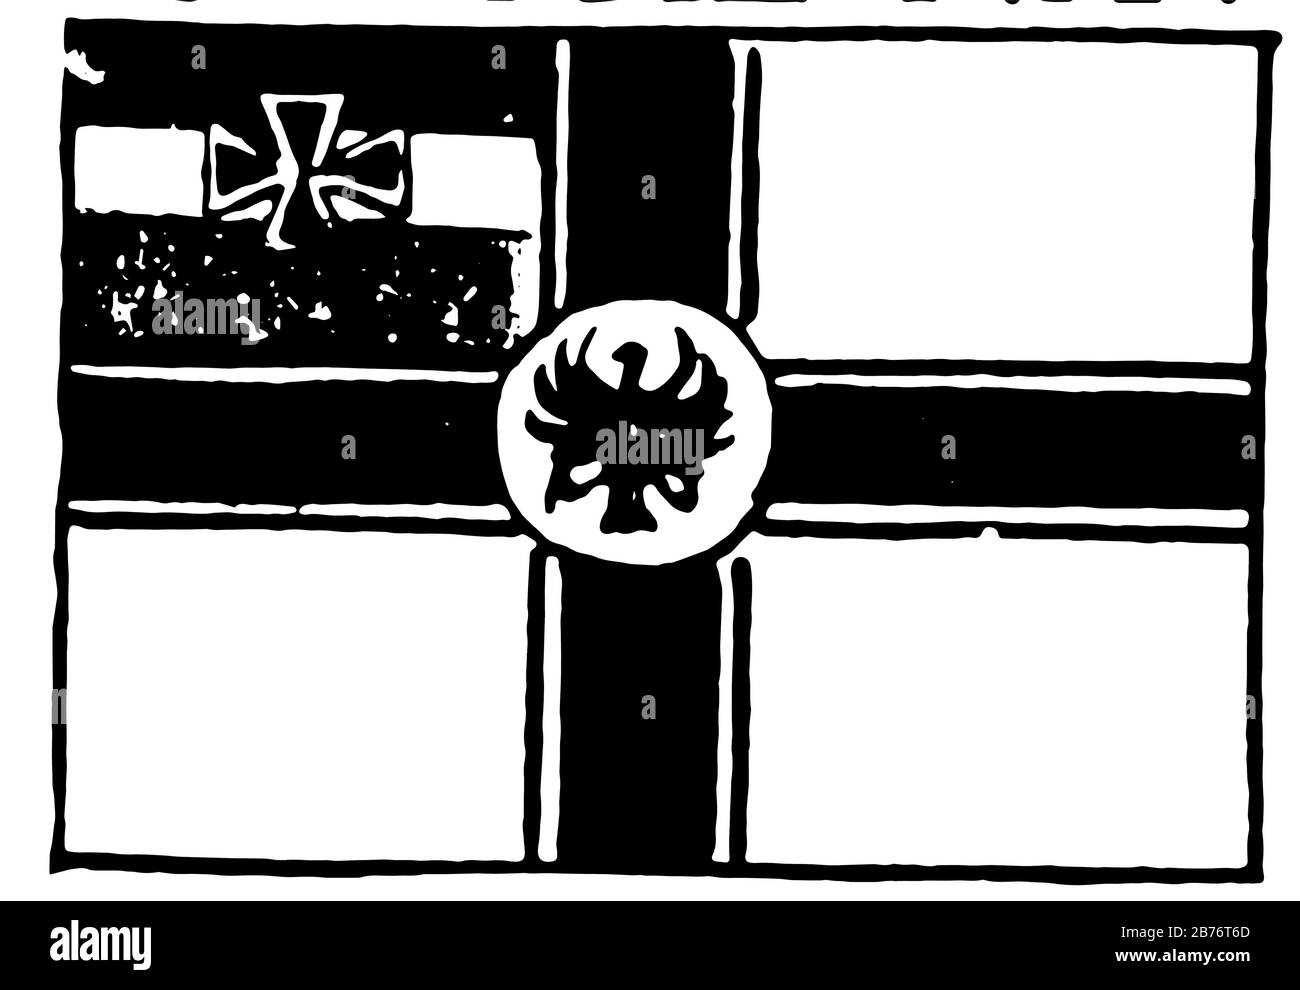 Drapeau de l'Allemagne, 1913, drapeau de couleur blanche a la croix noire reliant tous les côtés du drapeau avec disque blanc au centre, 3 bandes horizontales égales noir, blanc Illustration de Vecteur